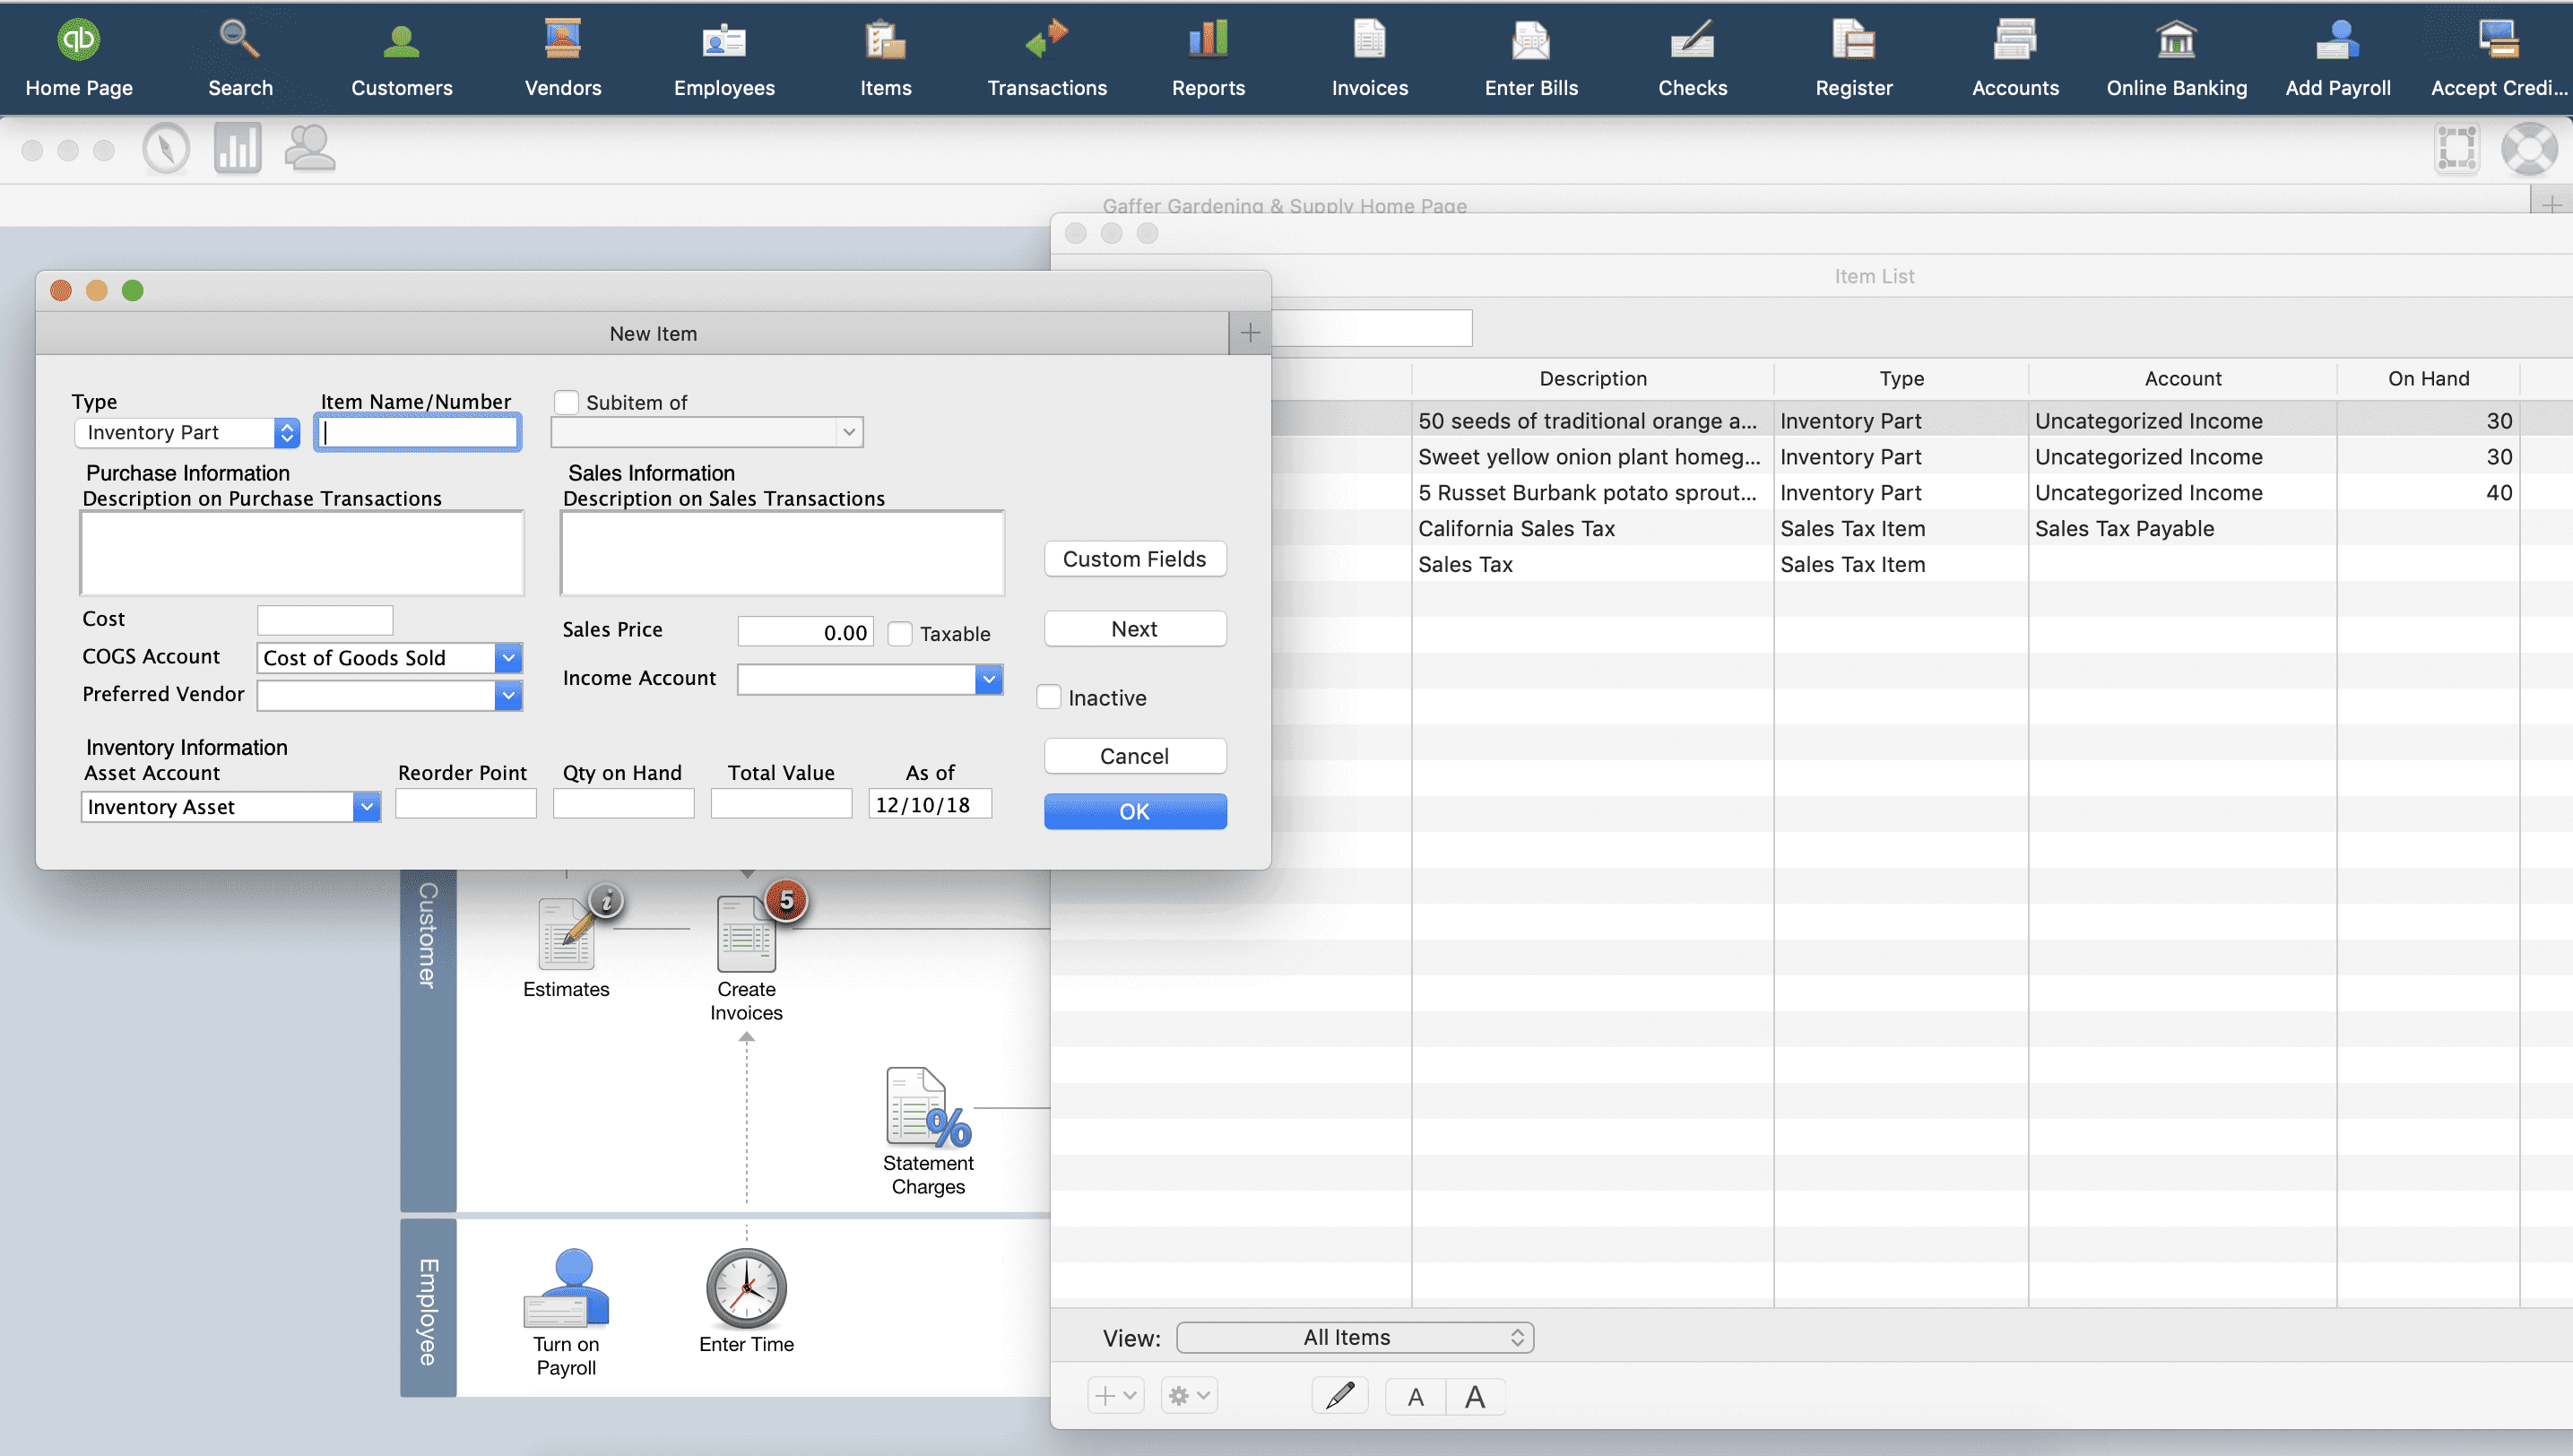 Quickbooks desktop for mac 2019